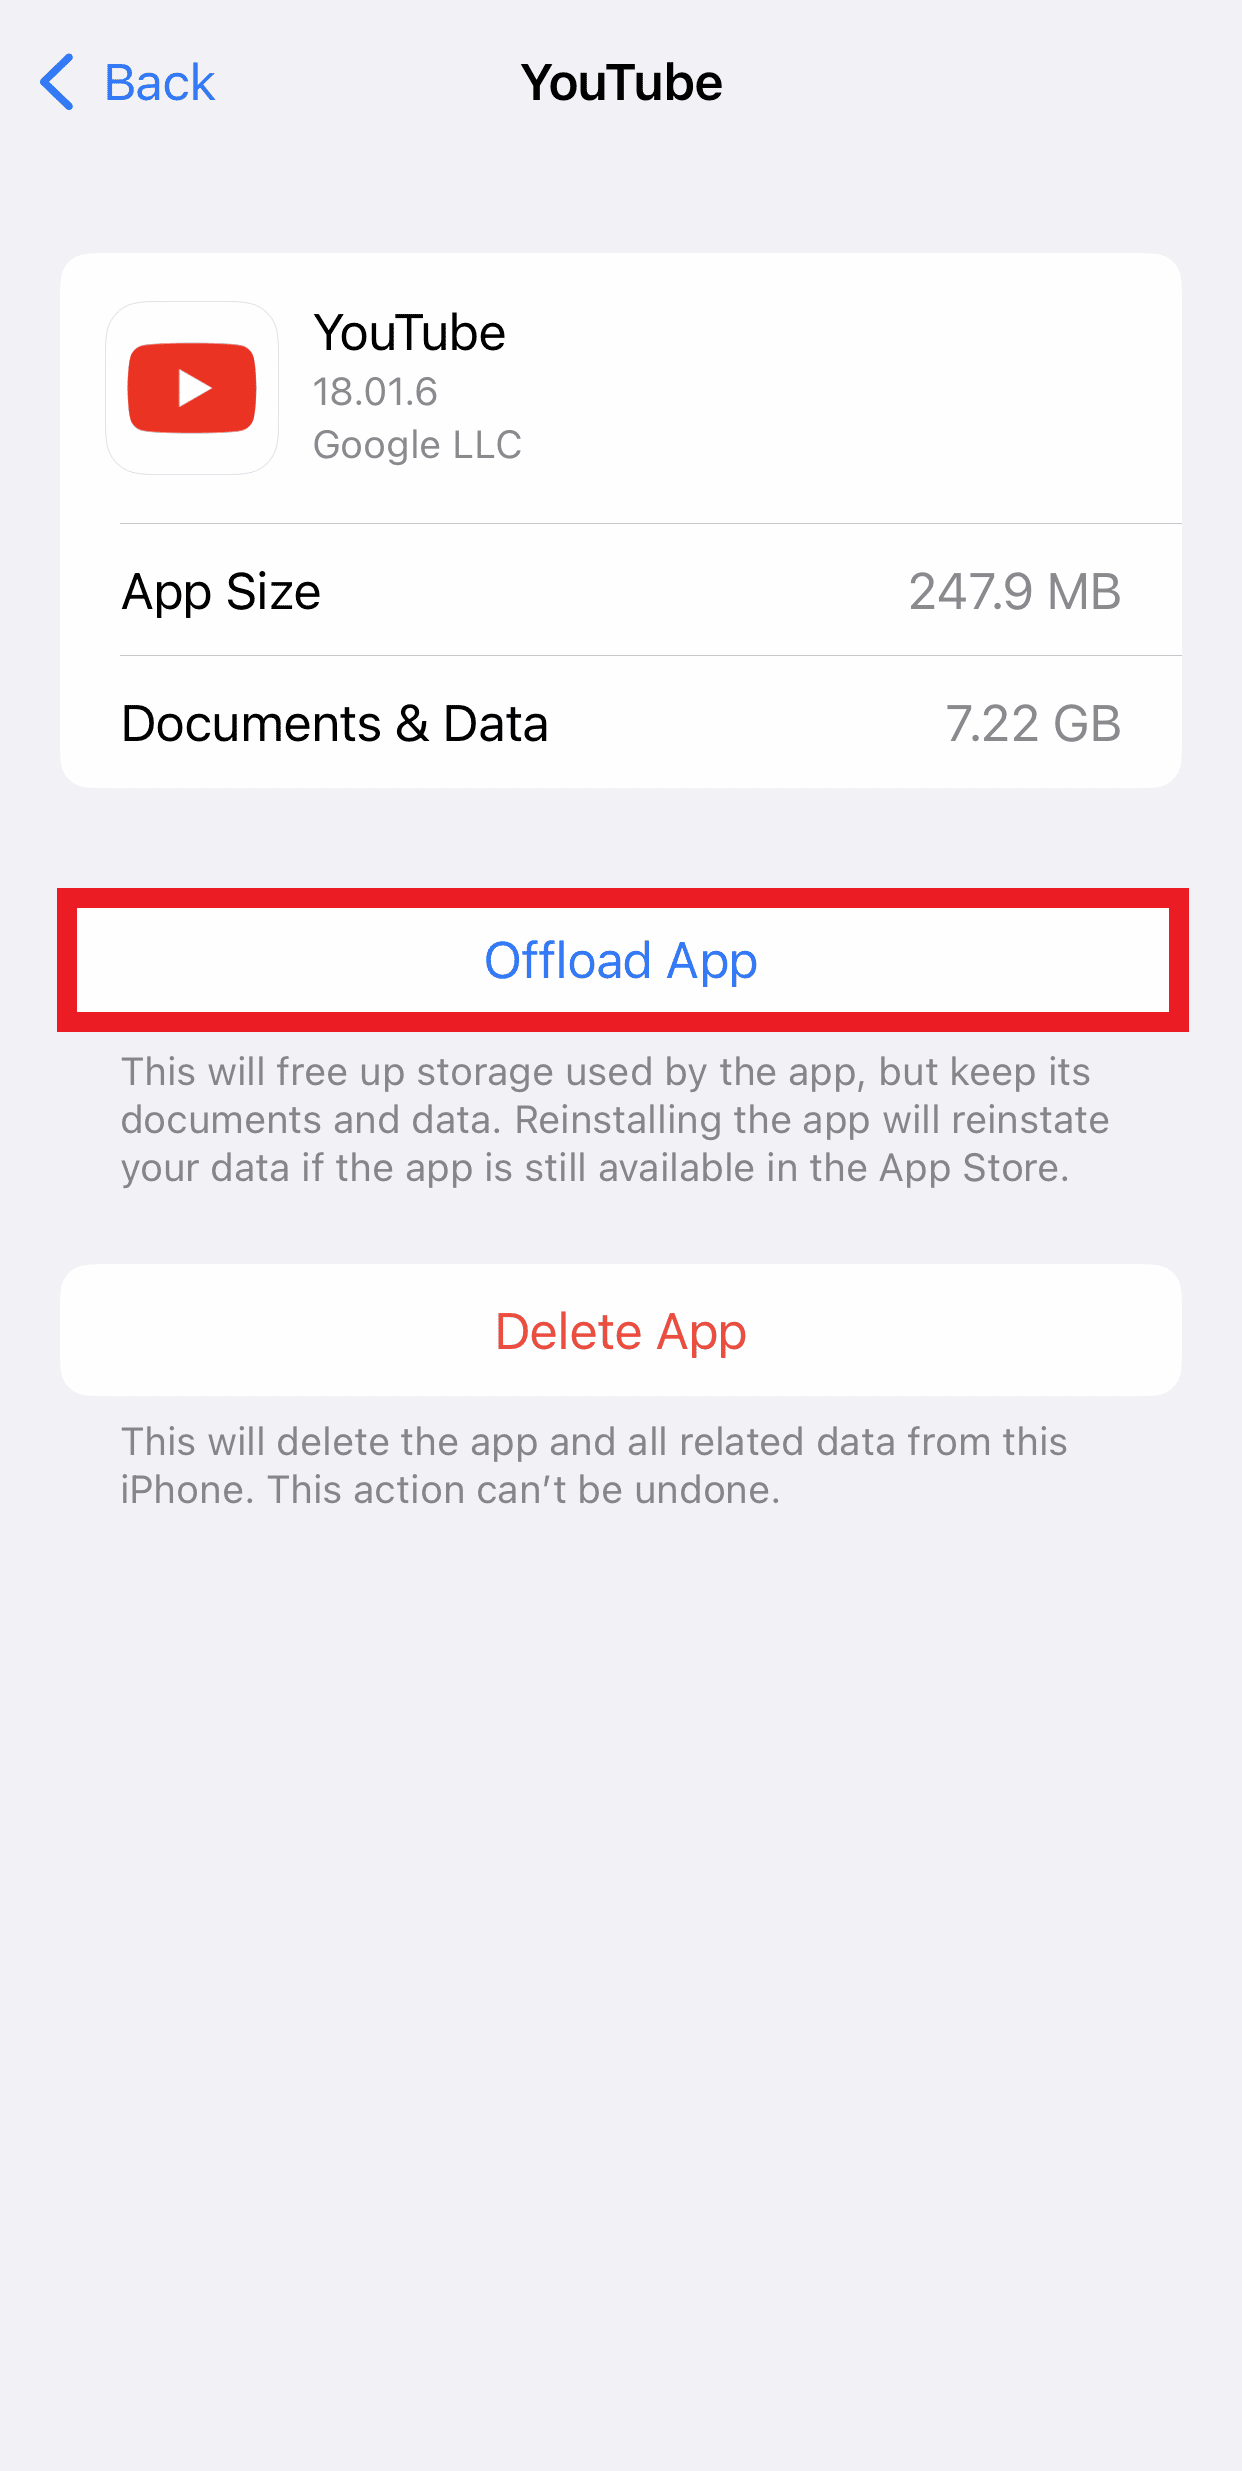 แตะที่ Offload App เพื่อเพิ่มพื้นที่ว่างบน iPhone ของคุณ